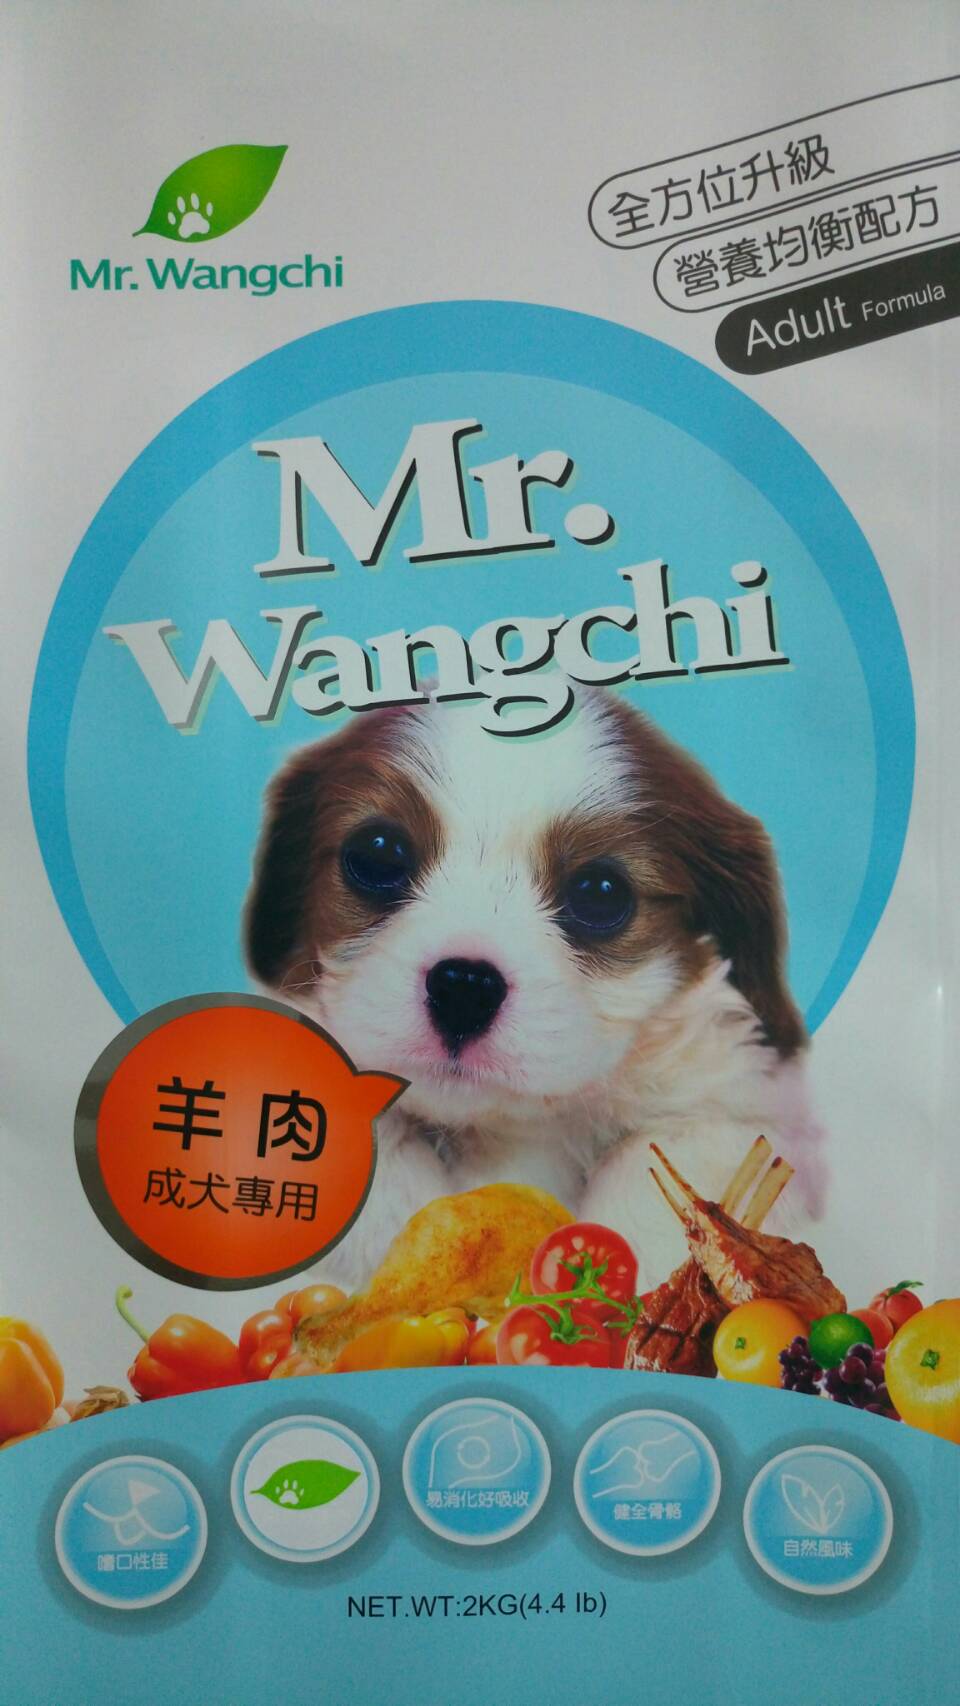 旺奇先生:羊肉成犬專用
Mr.Wangchi